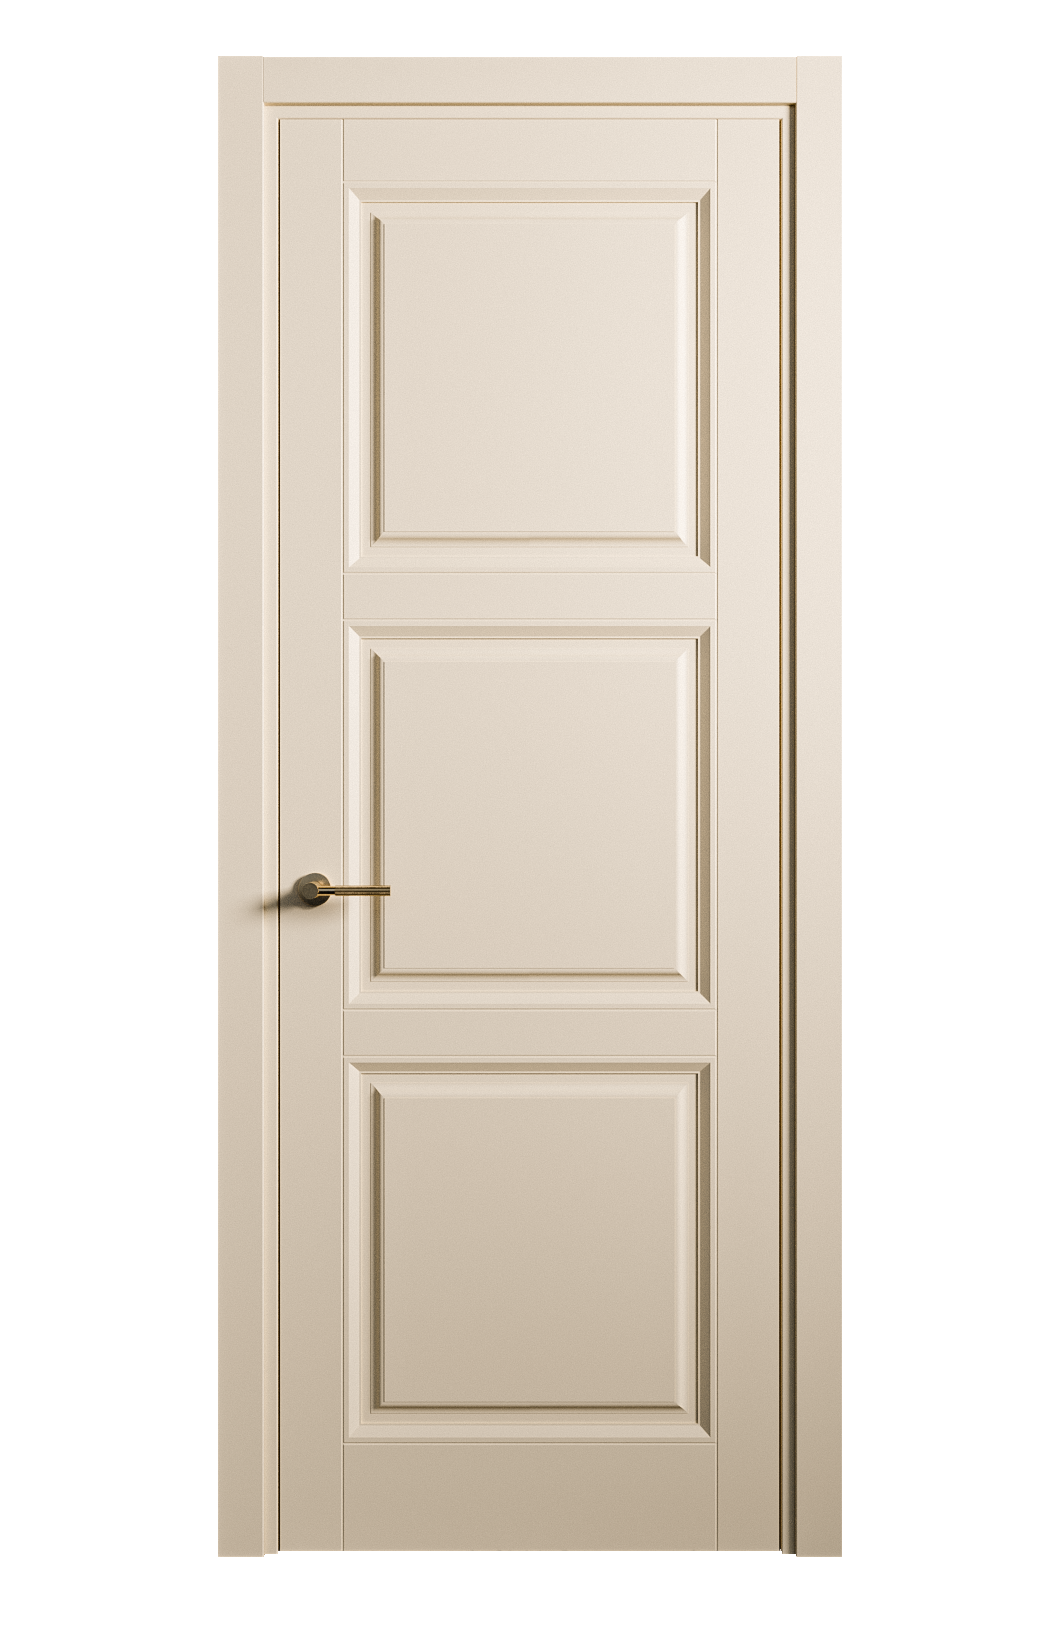 Межкомнатная дверь Venezia-3 глухая эмаль ral 1015 25716